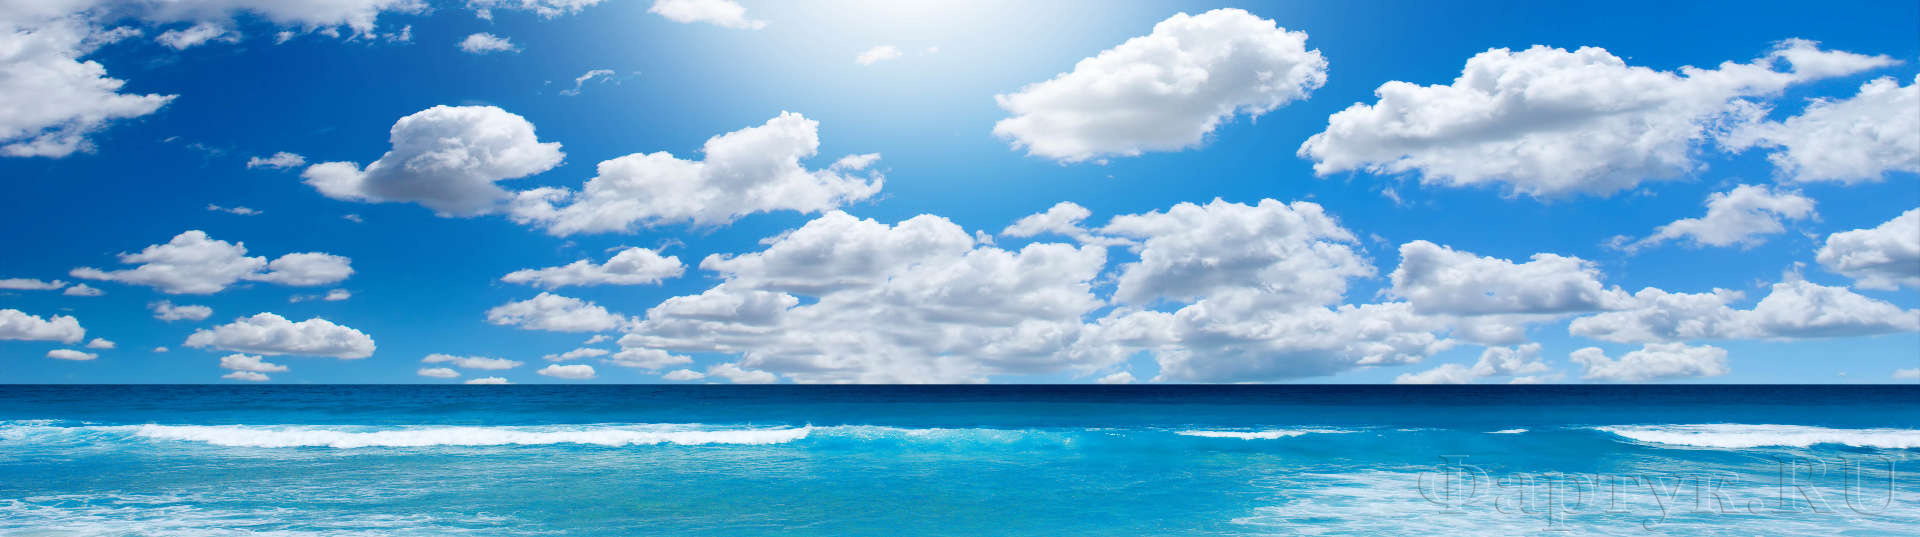 Синее море и небо в облаках